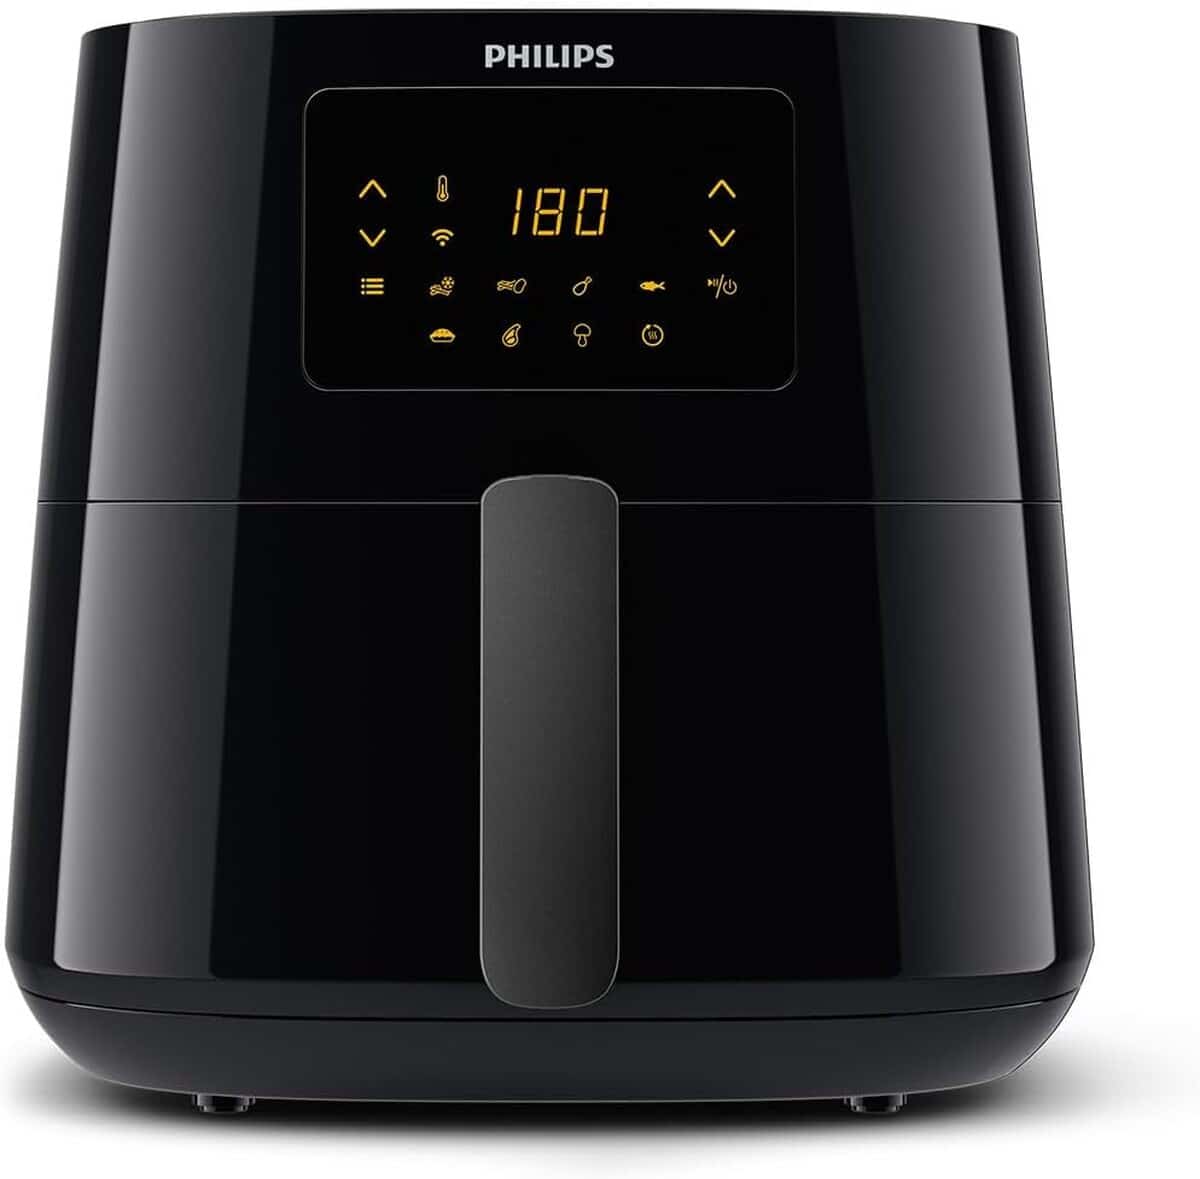 Philips Airfryer 5000 XL: test du Friteuse Saine et Connectée